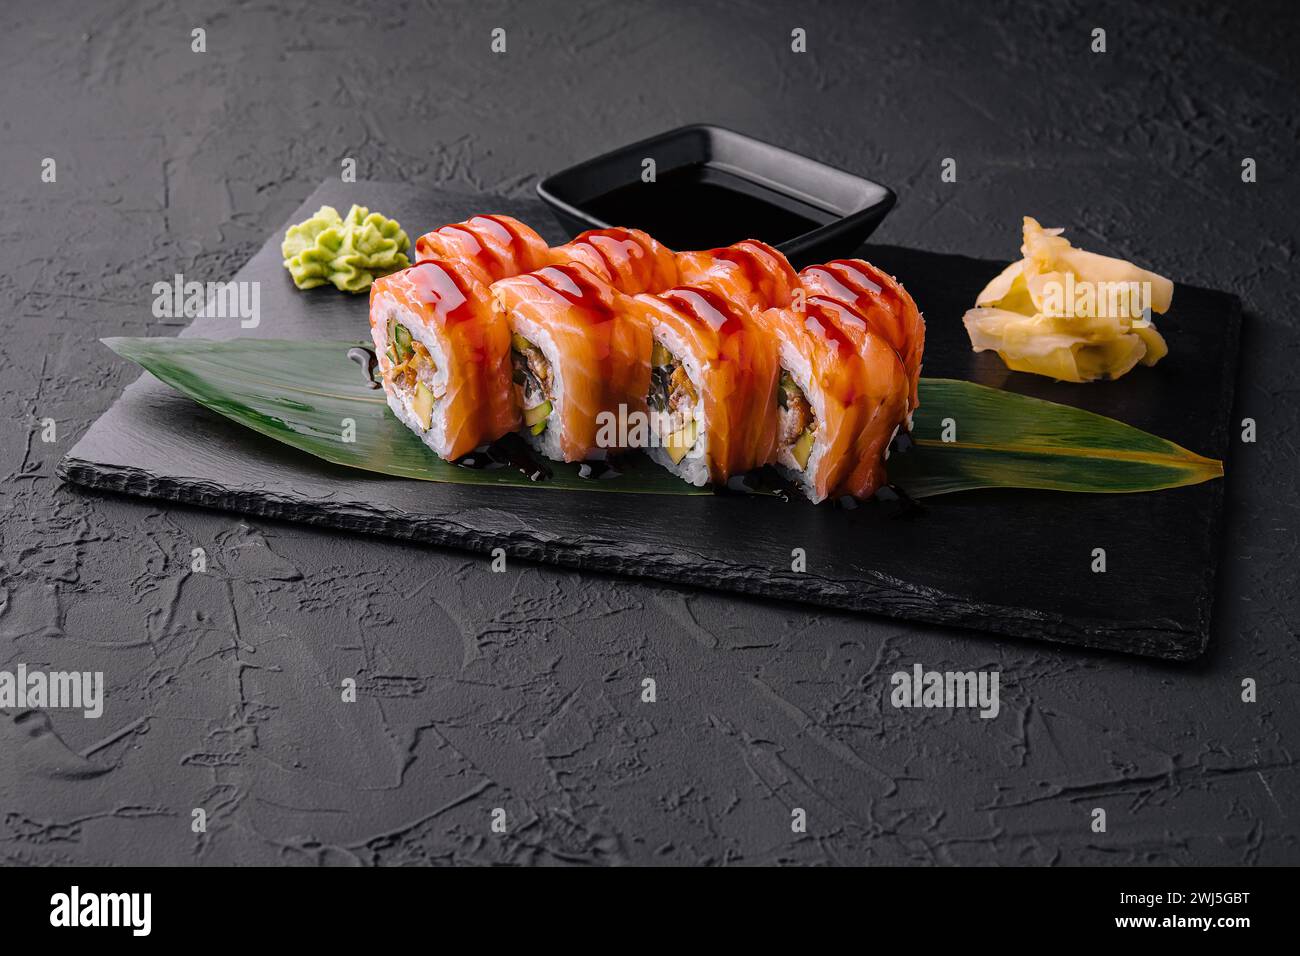 Délicieux sushi philadelphie sur assiette en pierre noire Banque D'Images